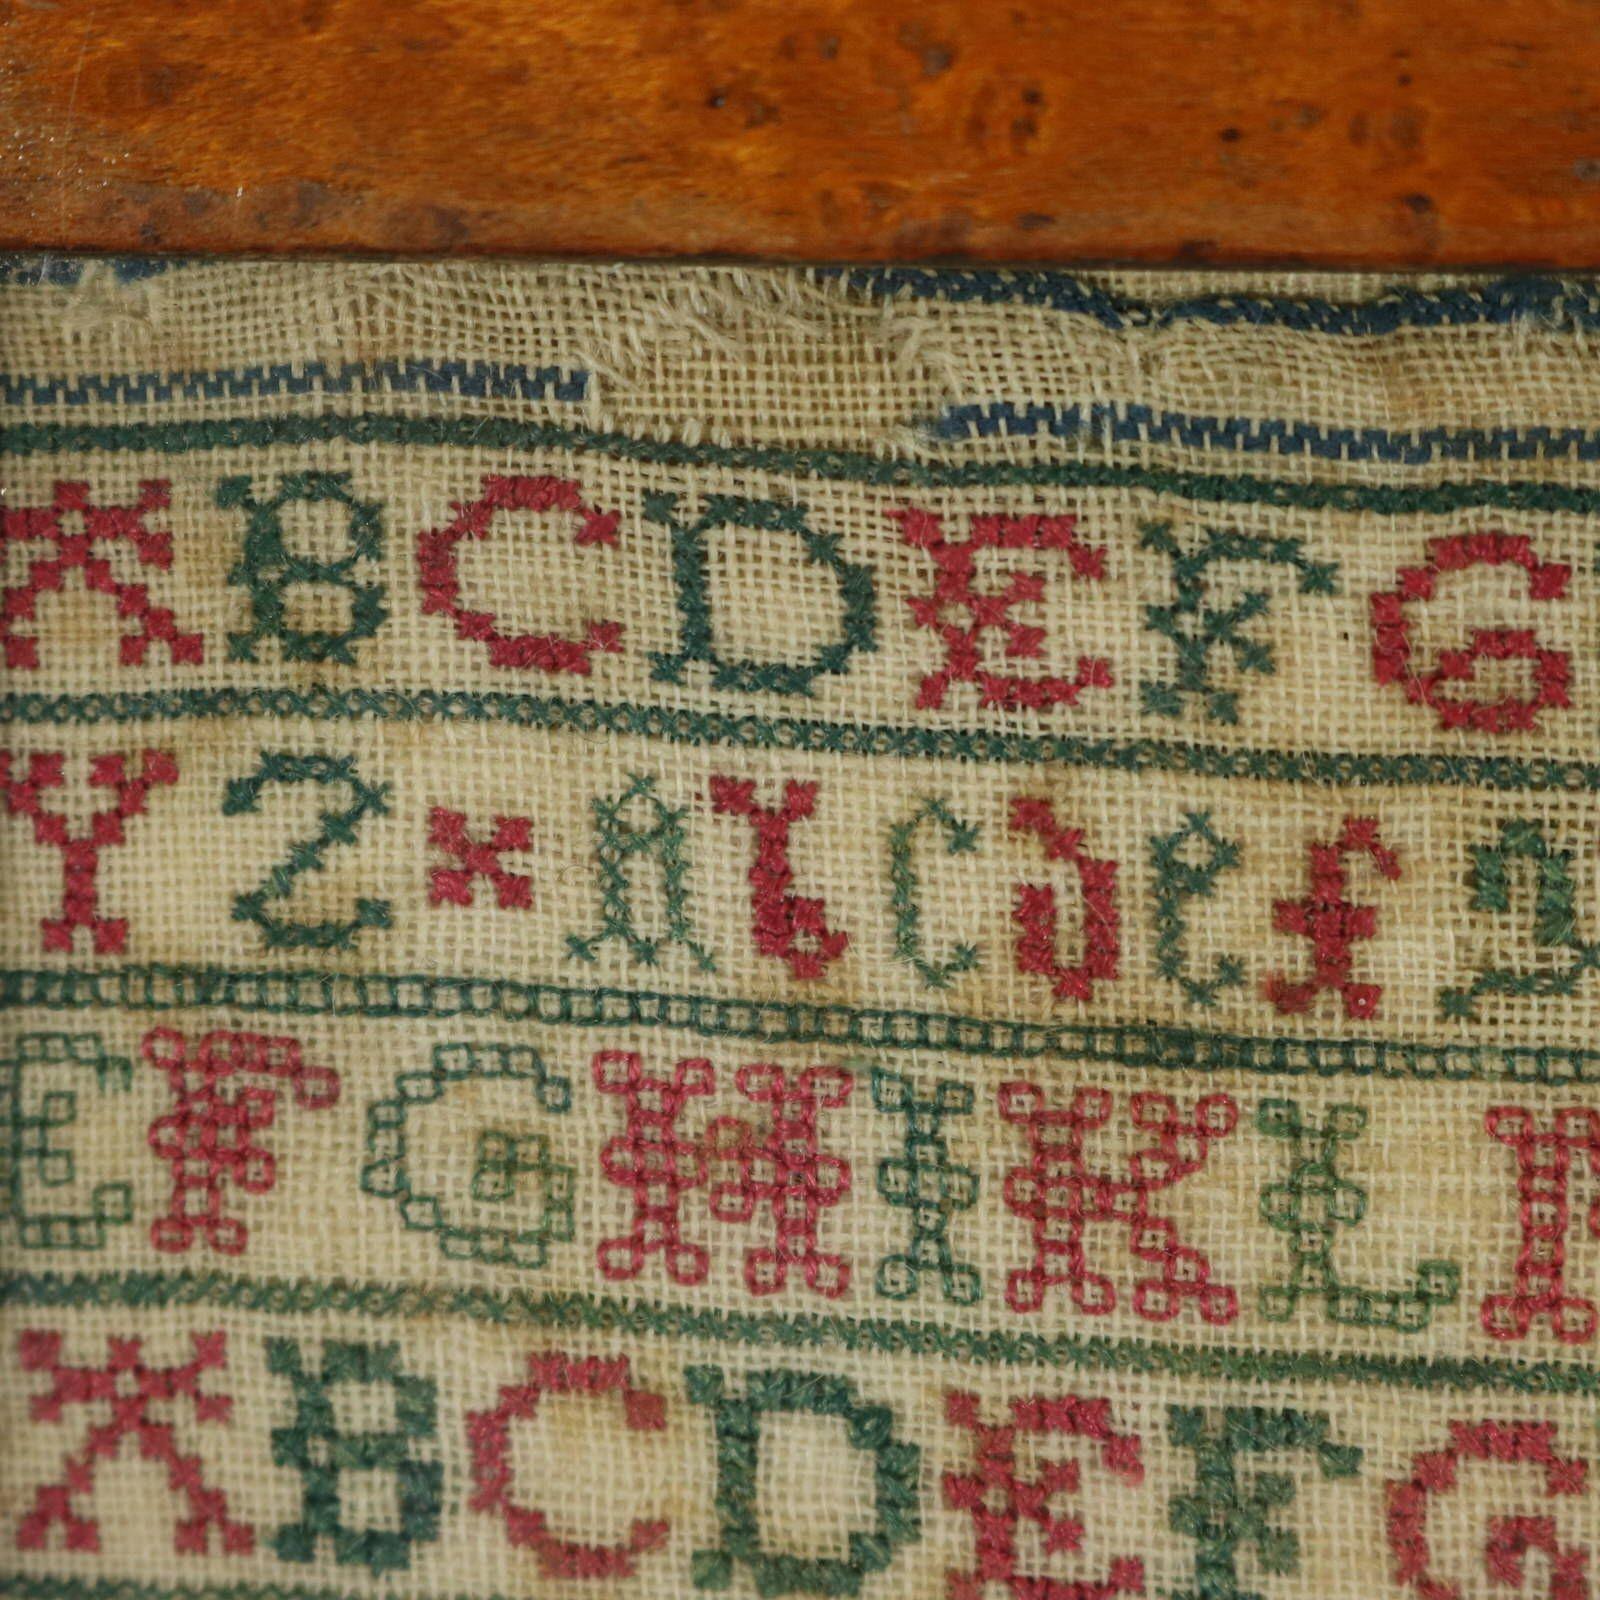 Antique Sampler Stitched in 1736, Scottish For Sale 9